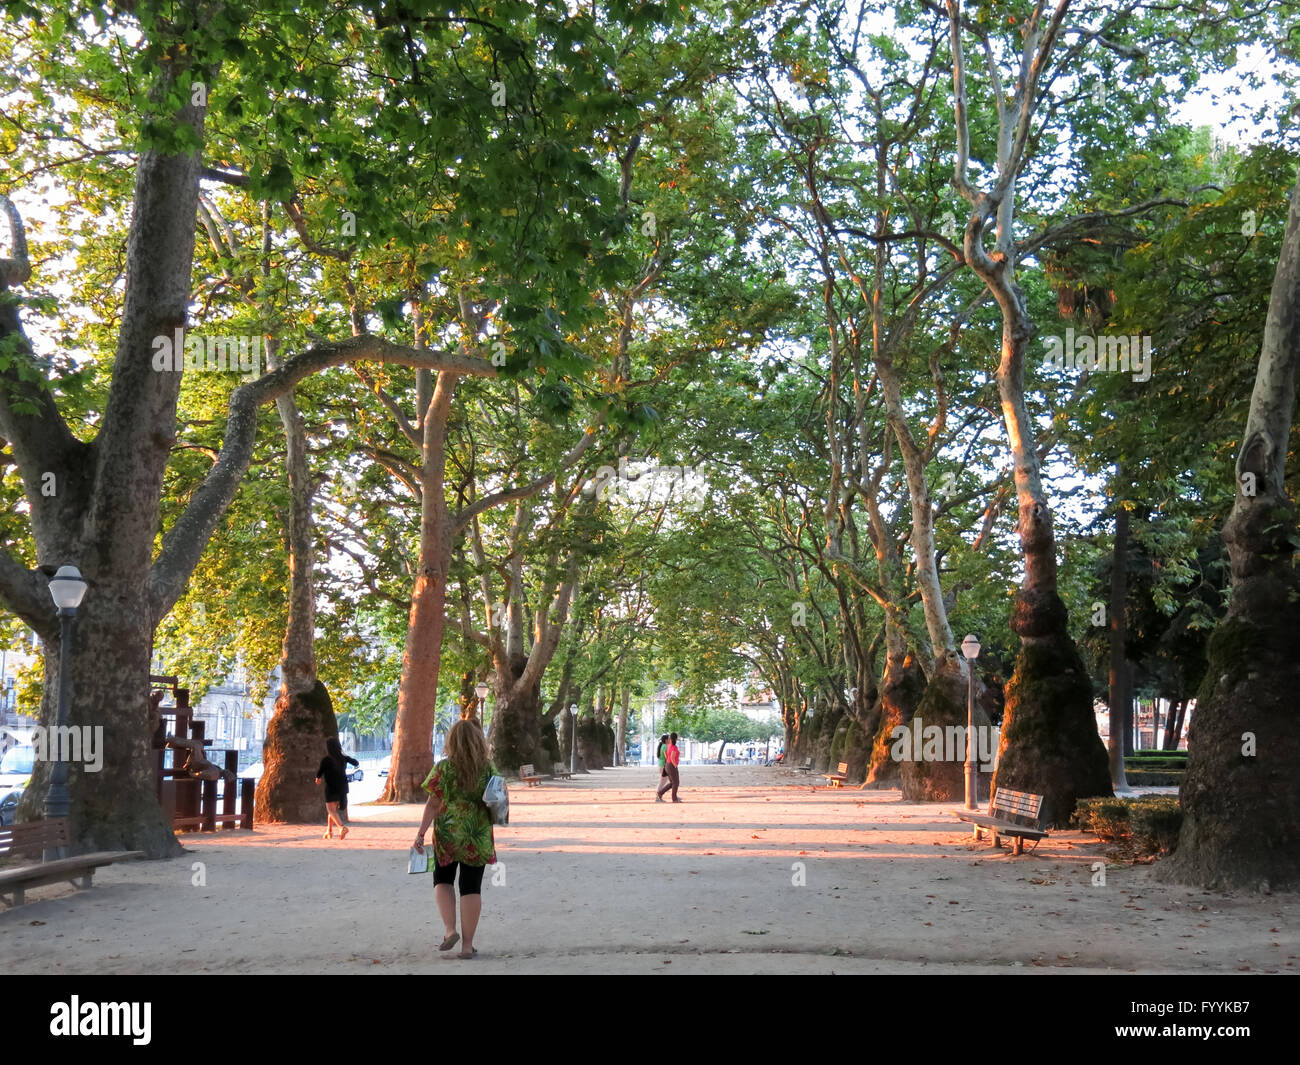 People walking in Cordoaria Park also called Joao Chagas Garden in Porto, Portugal. Stock Photo